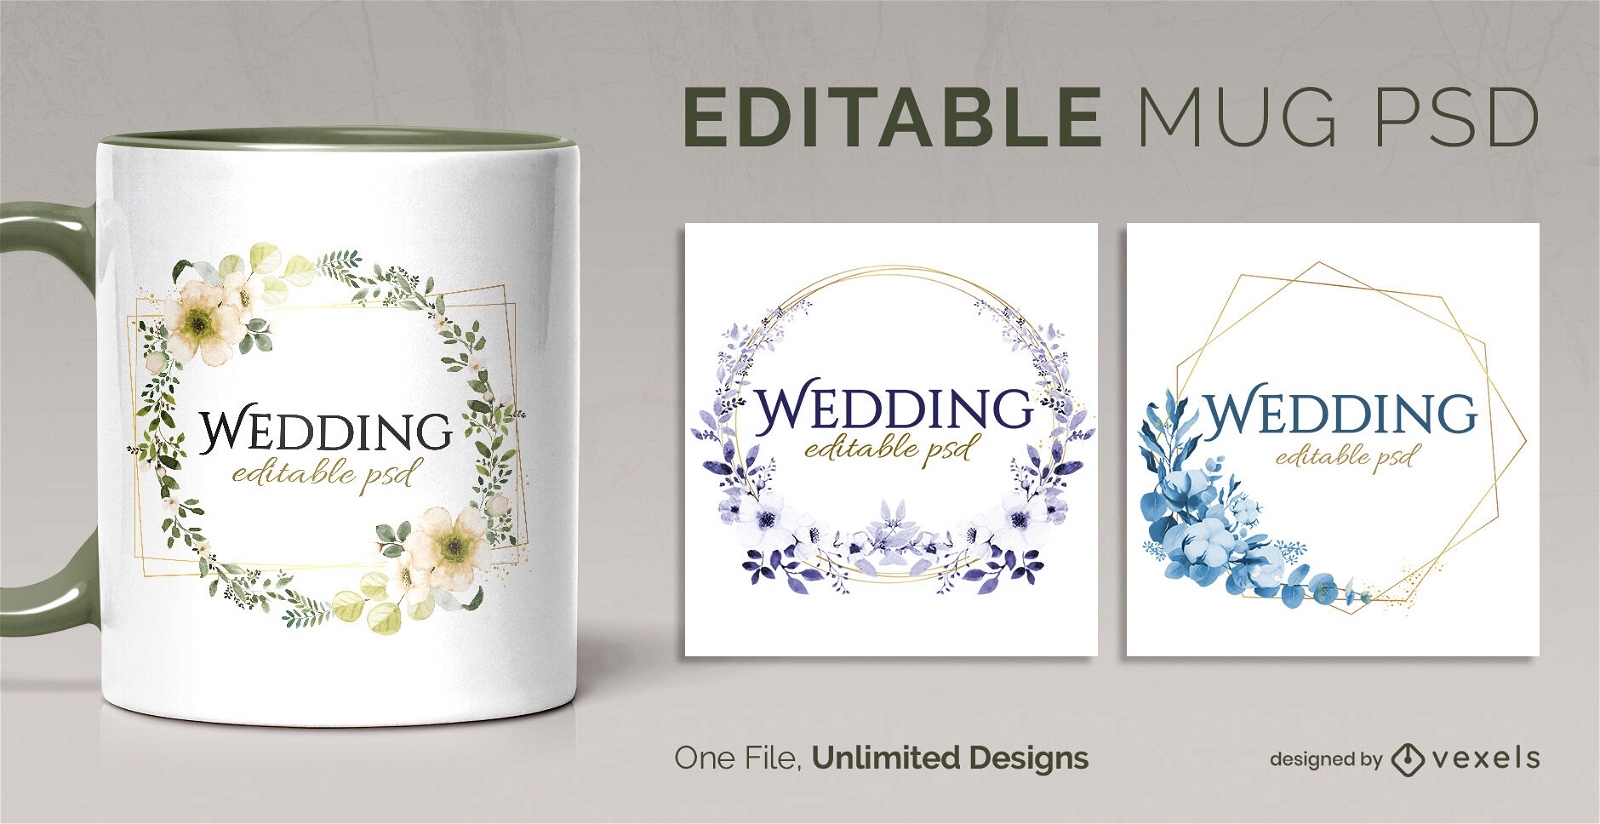 Wedding scalable mug template